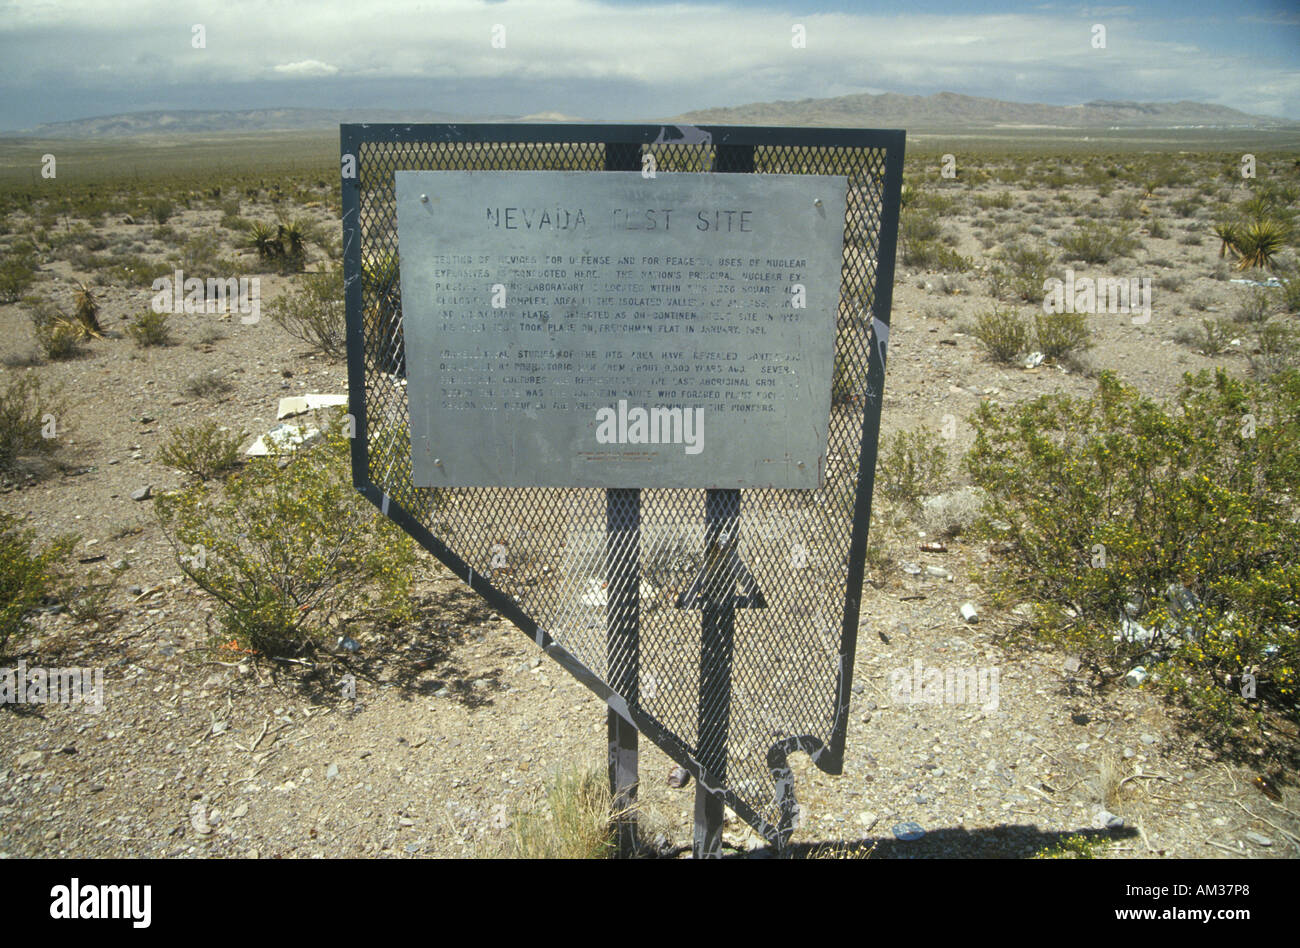 Nevada Test Site atomaren Testgelände nördlich von Las Vegas NV Stockfoto